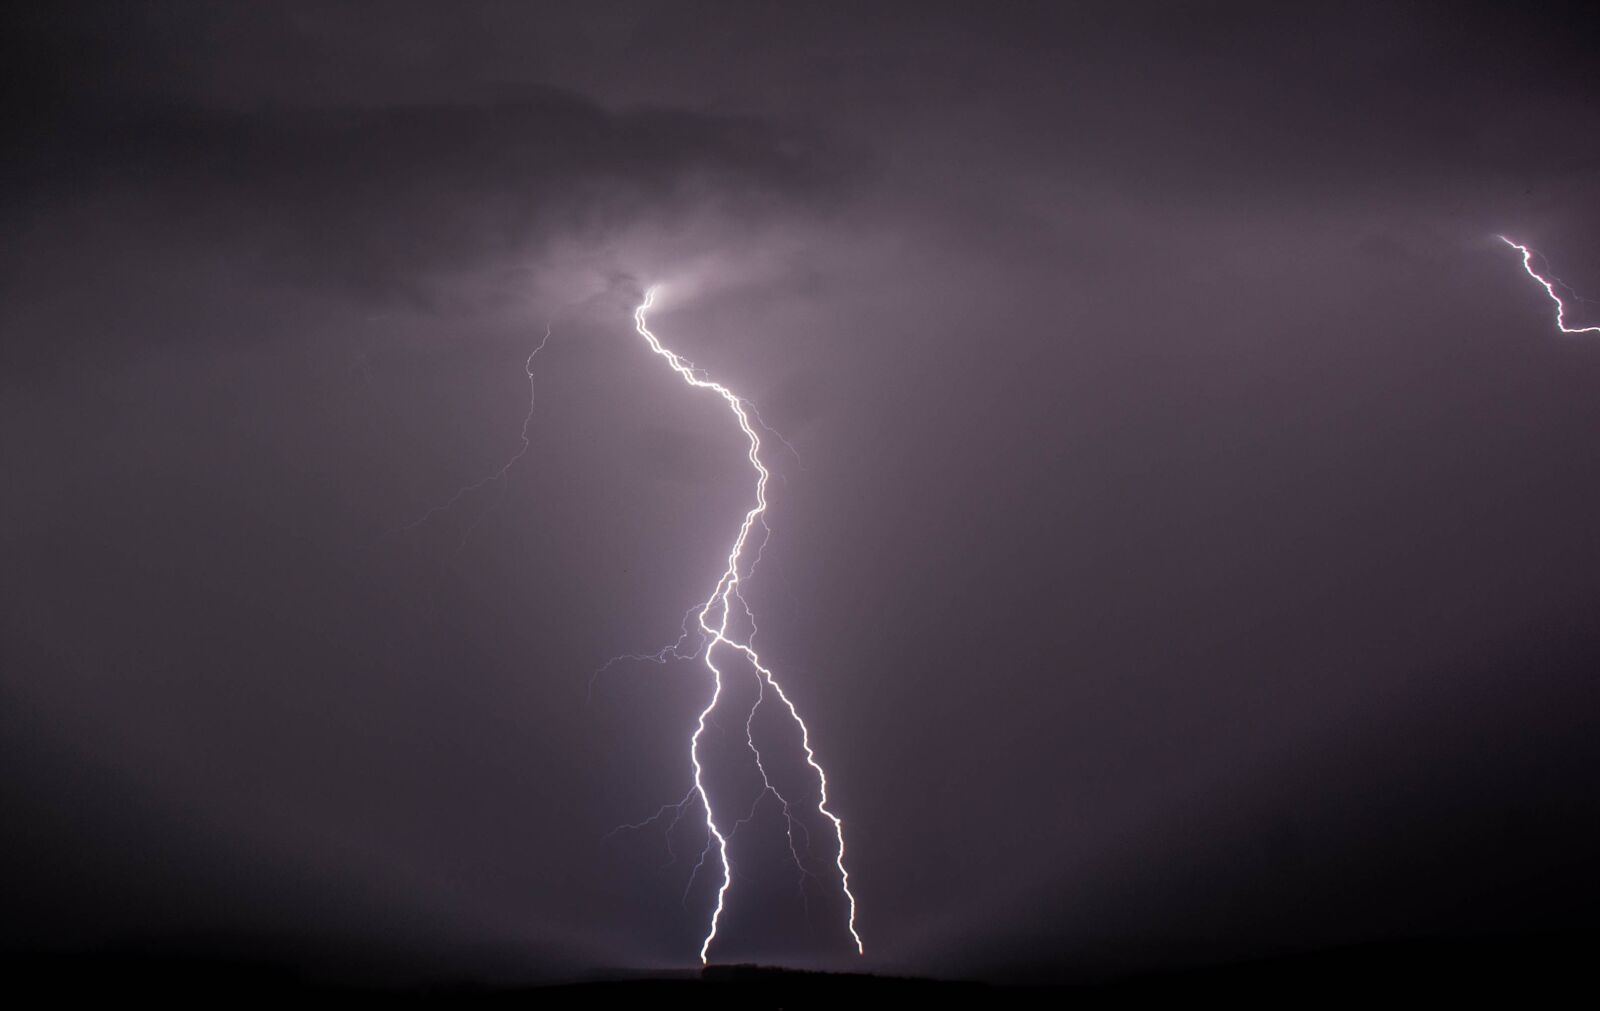 Sony Alpha NEX-5 sample photo. Lightning, thunder, weather photography